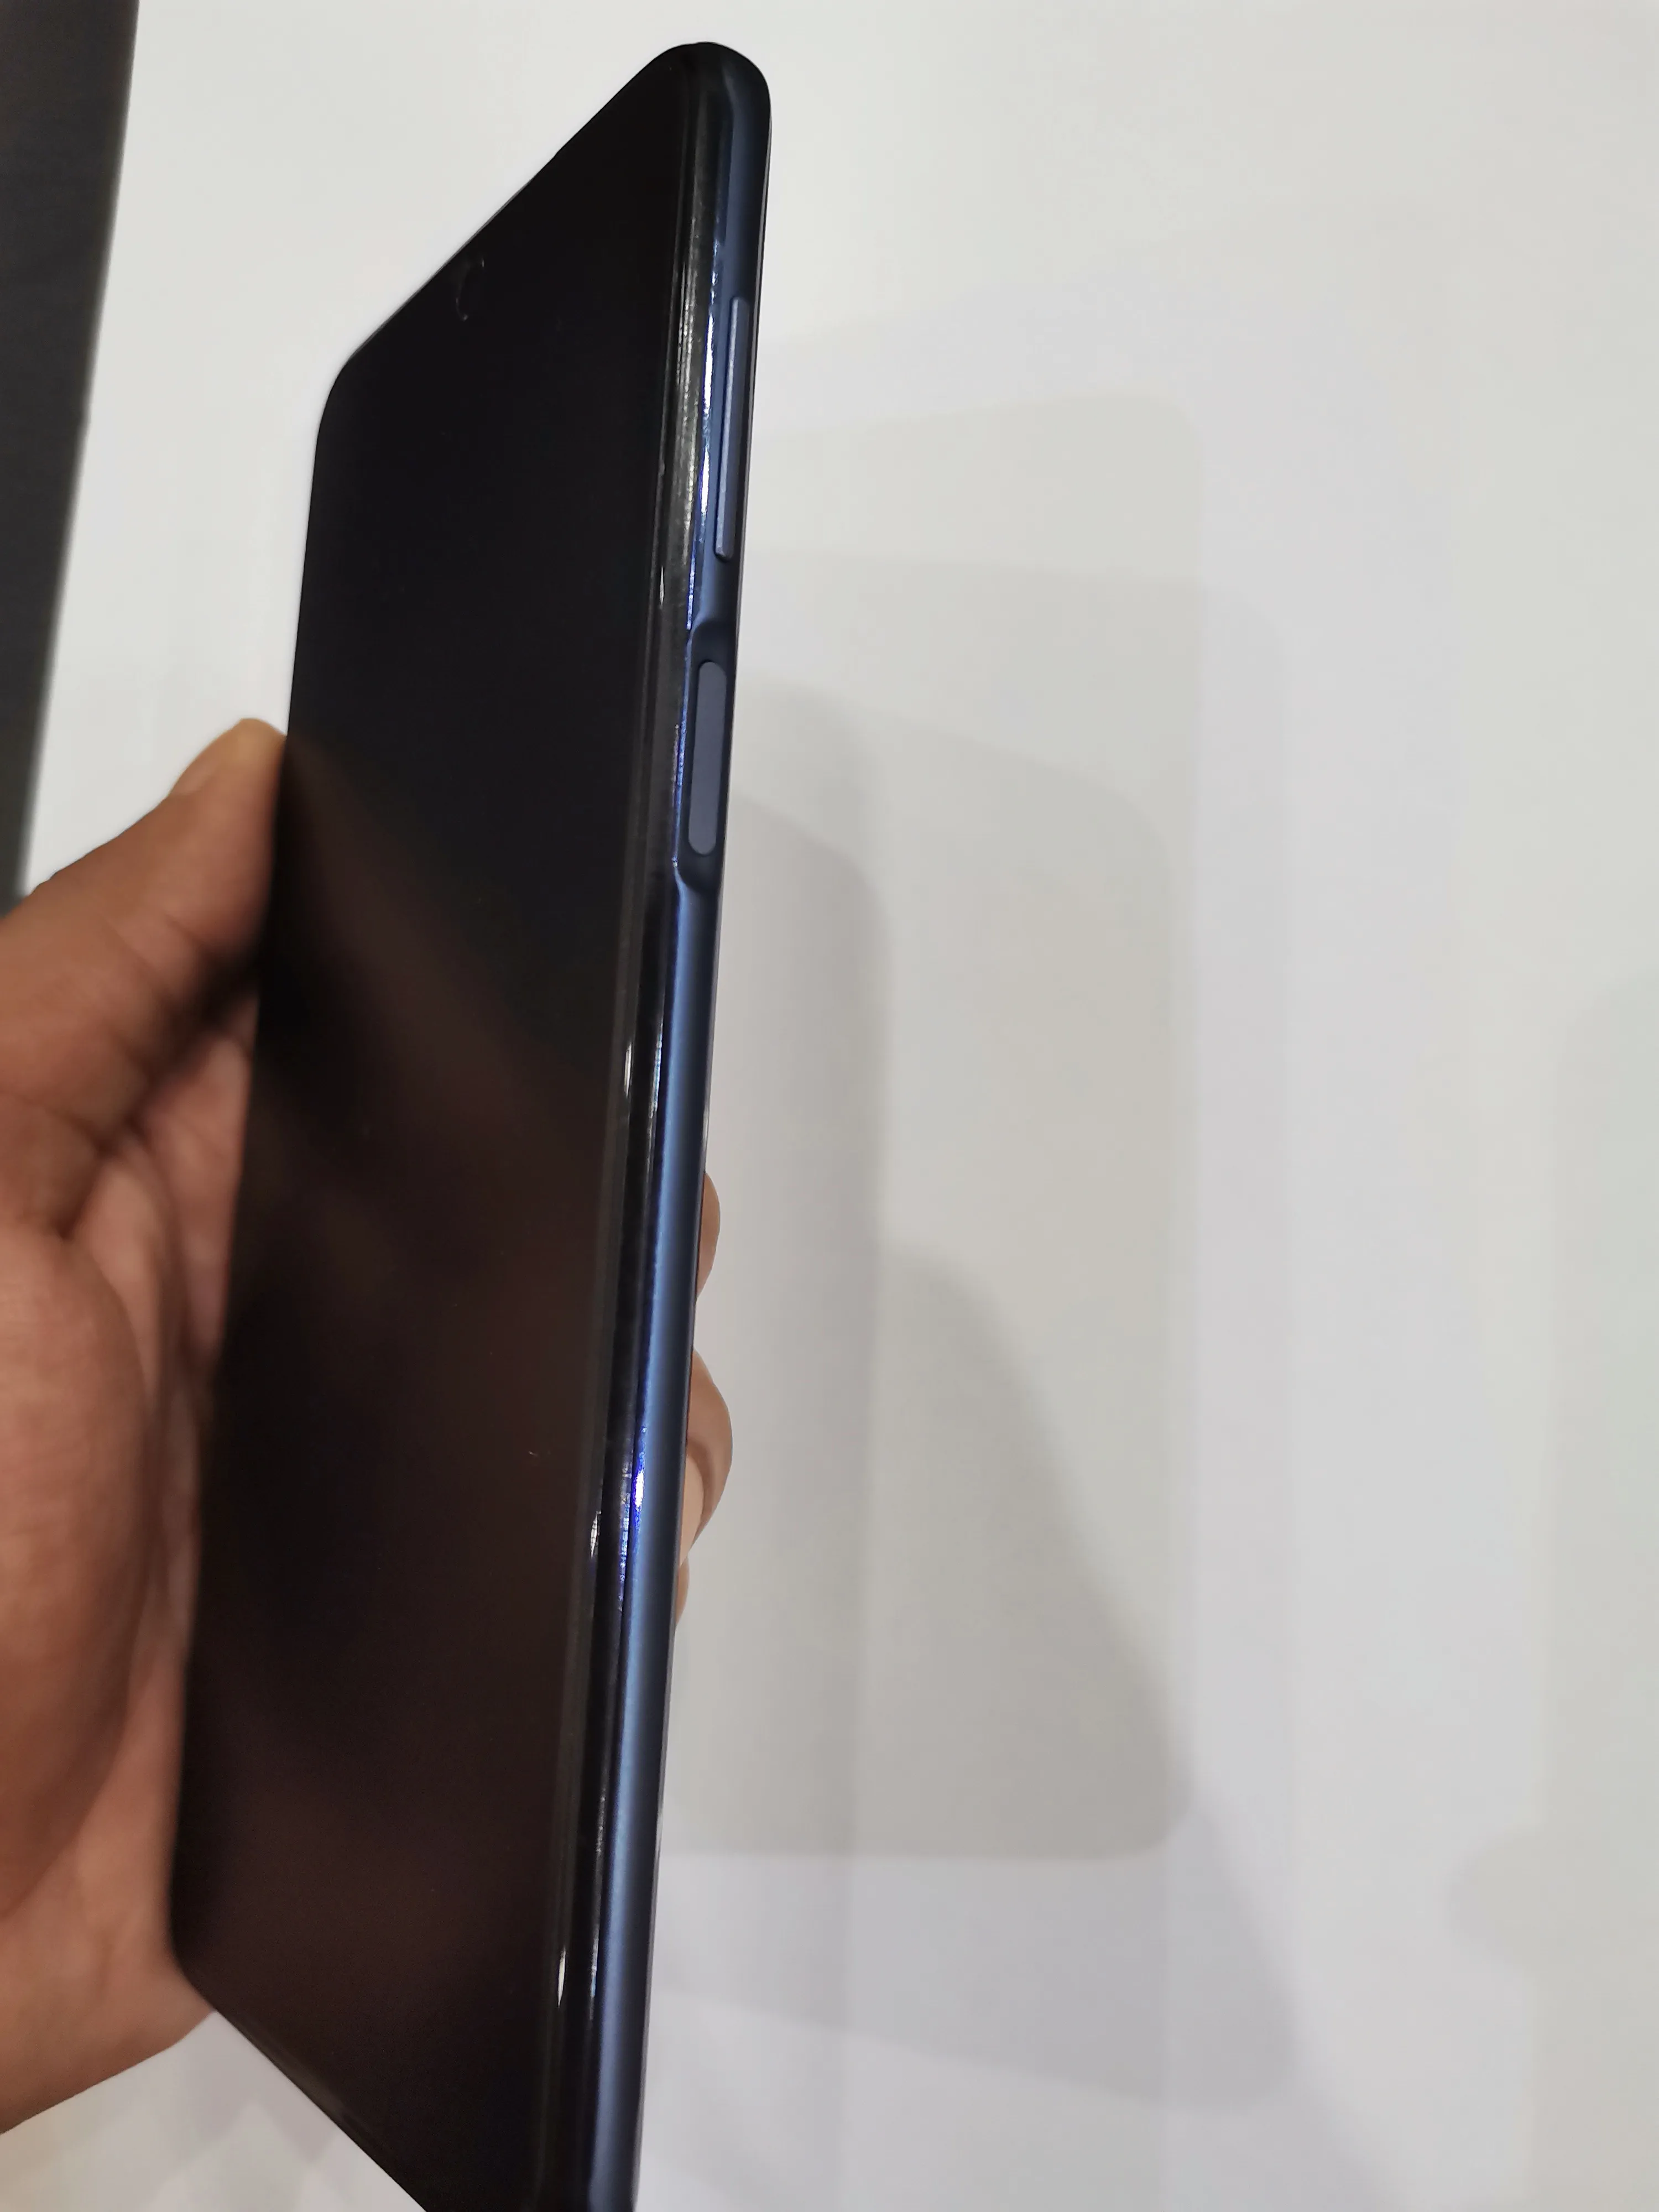 Redmi Note 9 Pro (6/128) Snapdragon 720 G (Interstellar Grey) - photo 2